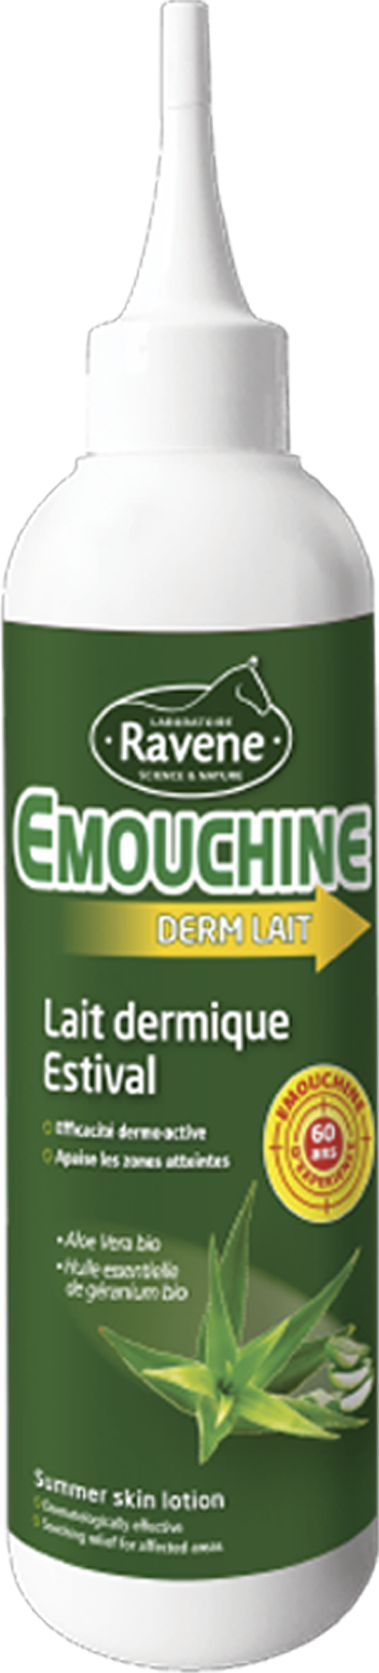 Emouchine DERM LAIT, 250 ml